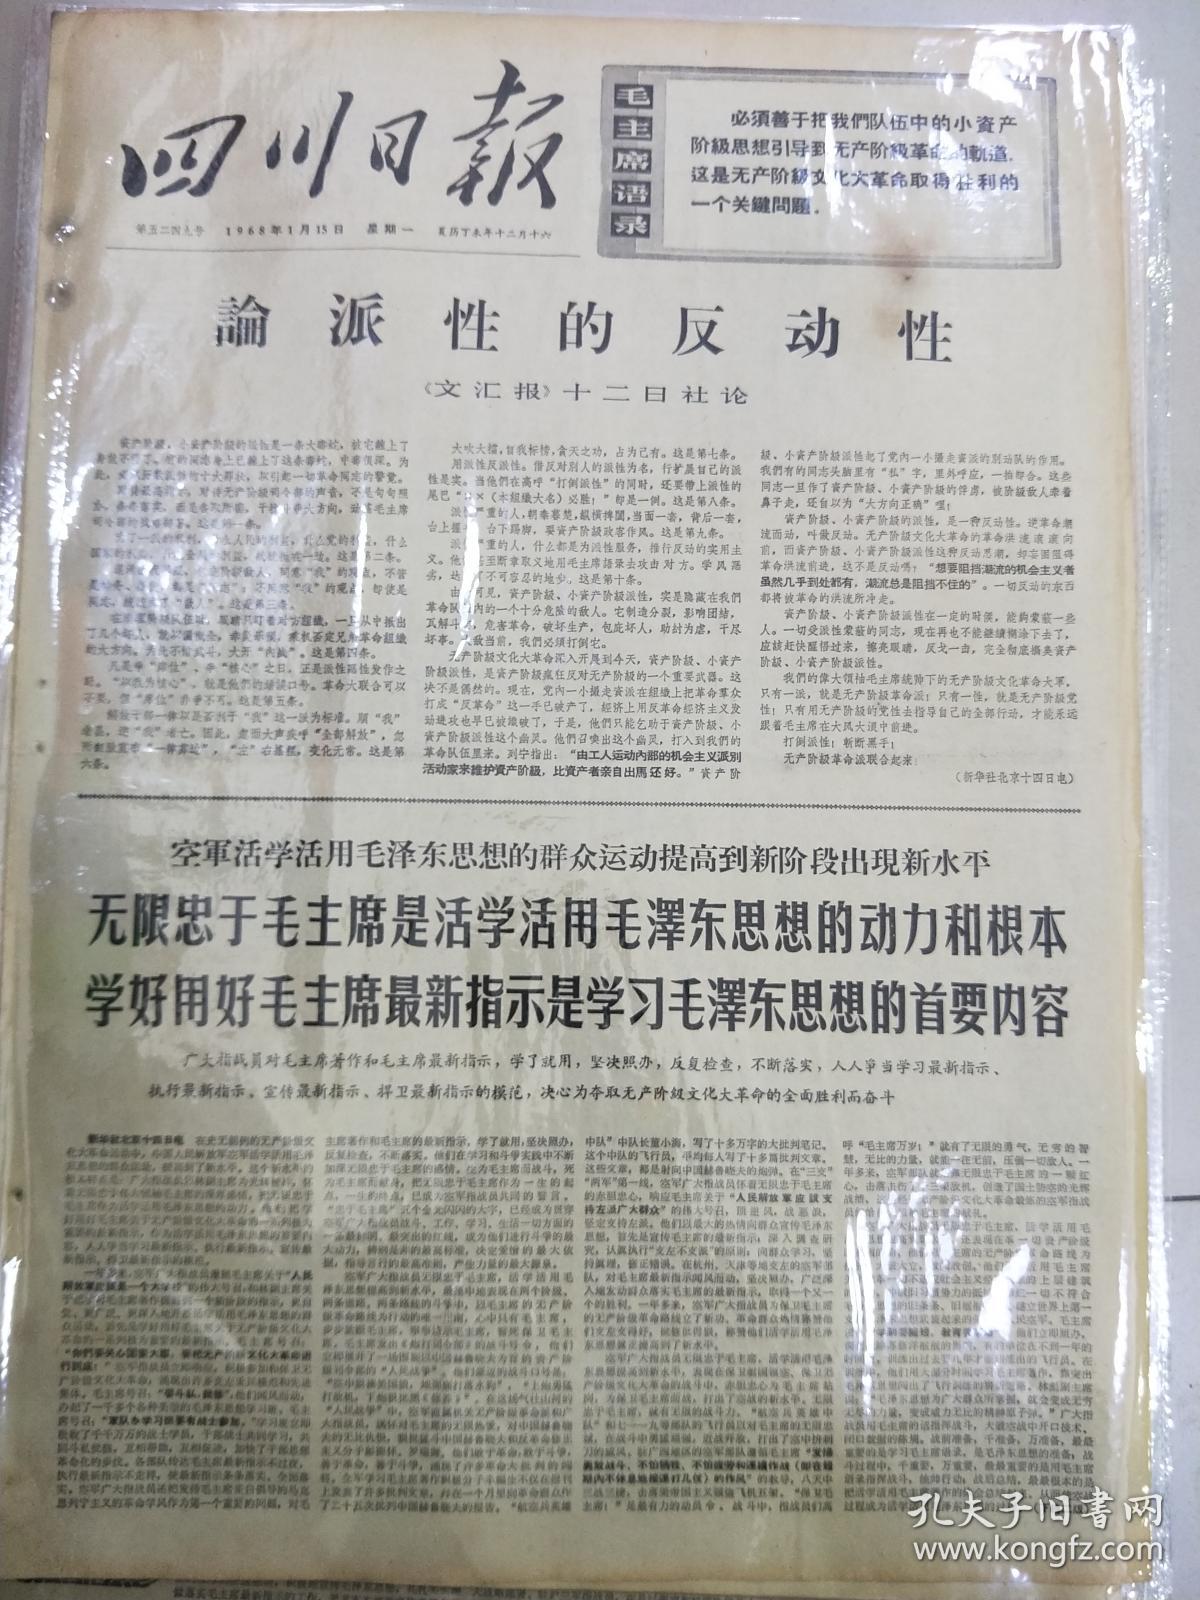 报纸四川日报1968年1月15日（4开四版）
論派性的反动性；
无限忠于毛主席是活学活用毛泽东思想的动力和根本学好用好毛主席最新指示是学习毛泽东思想的首要内容。